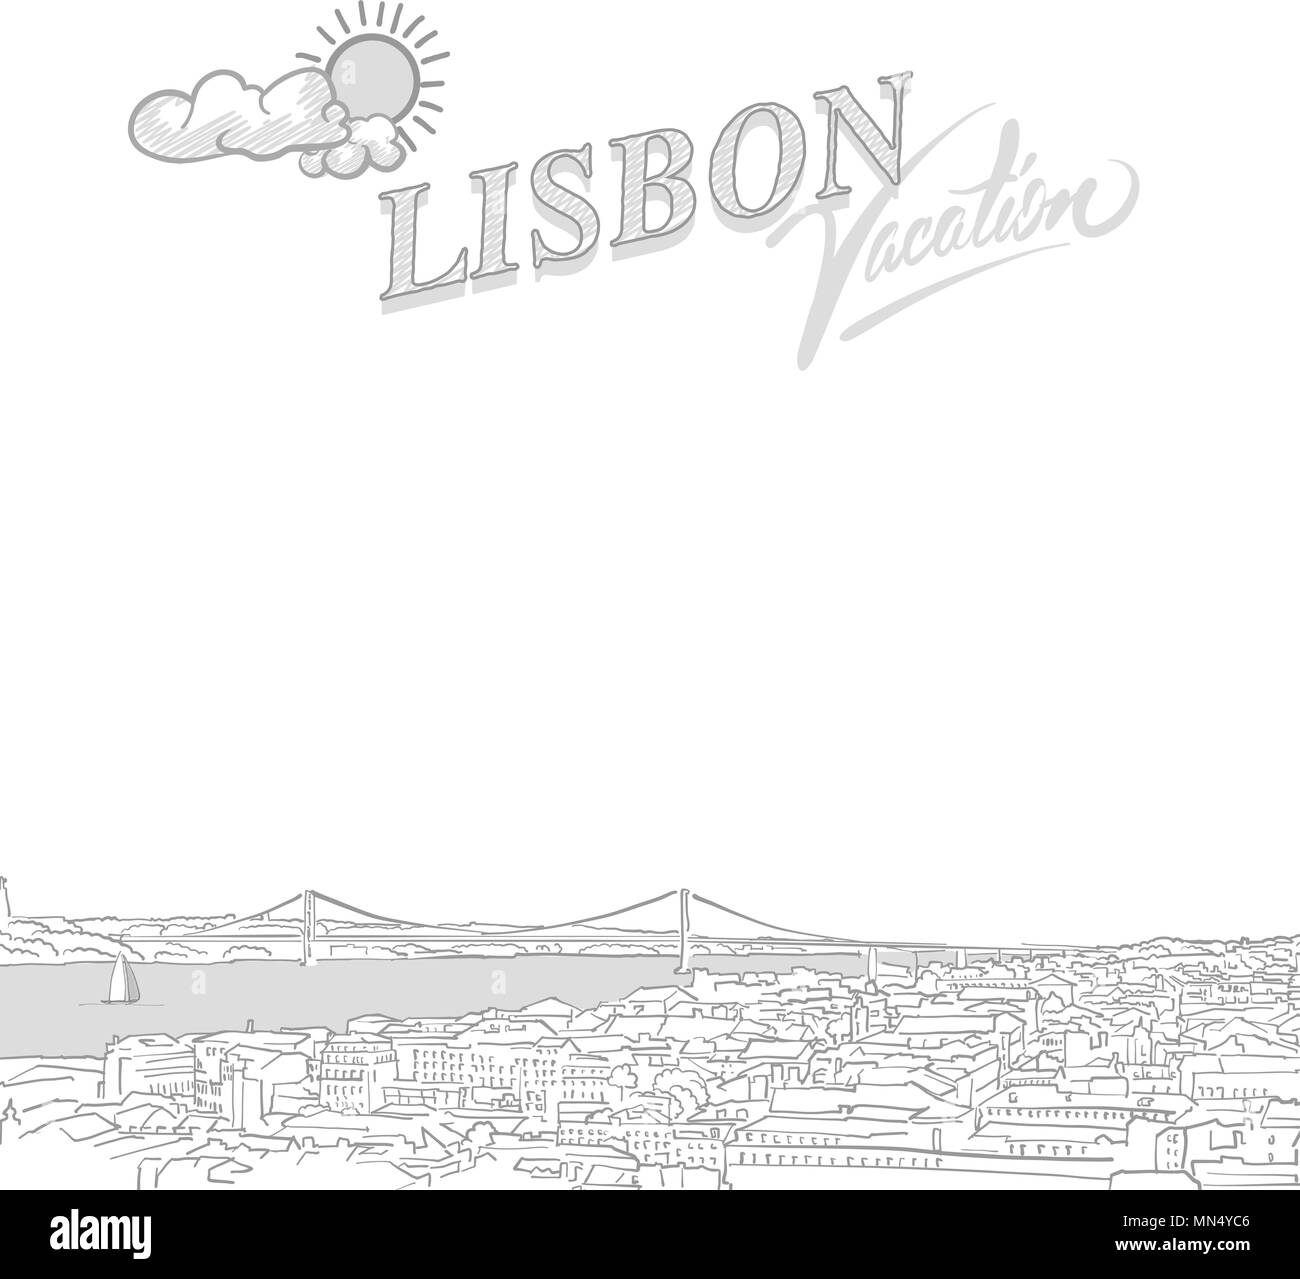 Cubierta de marketing de turismo de Lisboa, dibujados a mano dibujo vectorial Ilustración del Vector